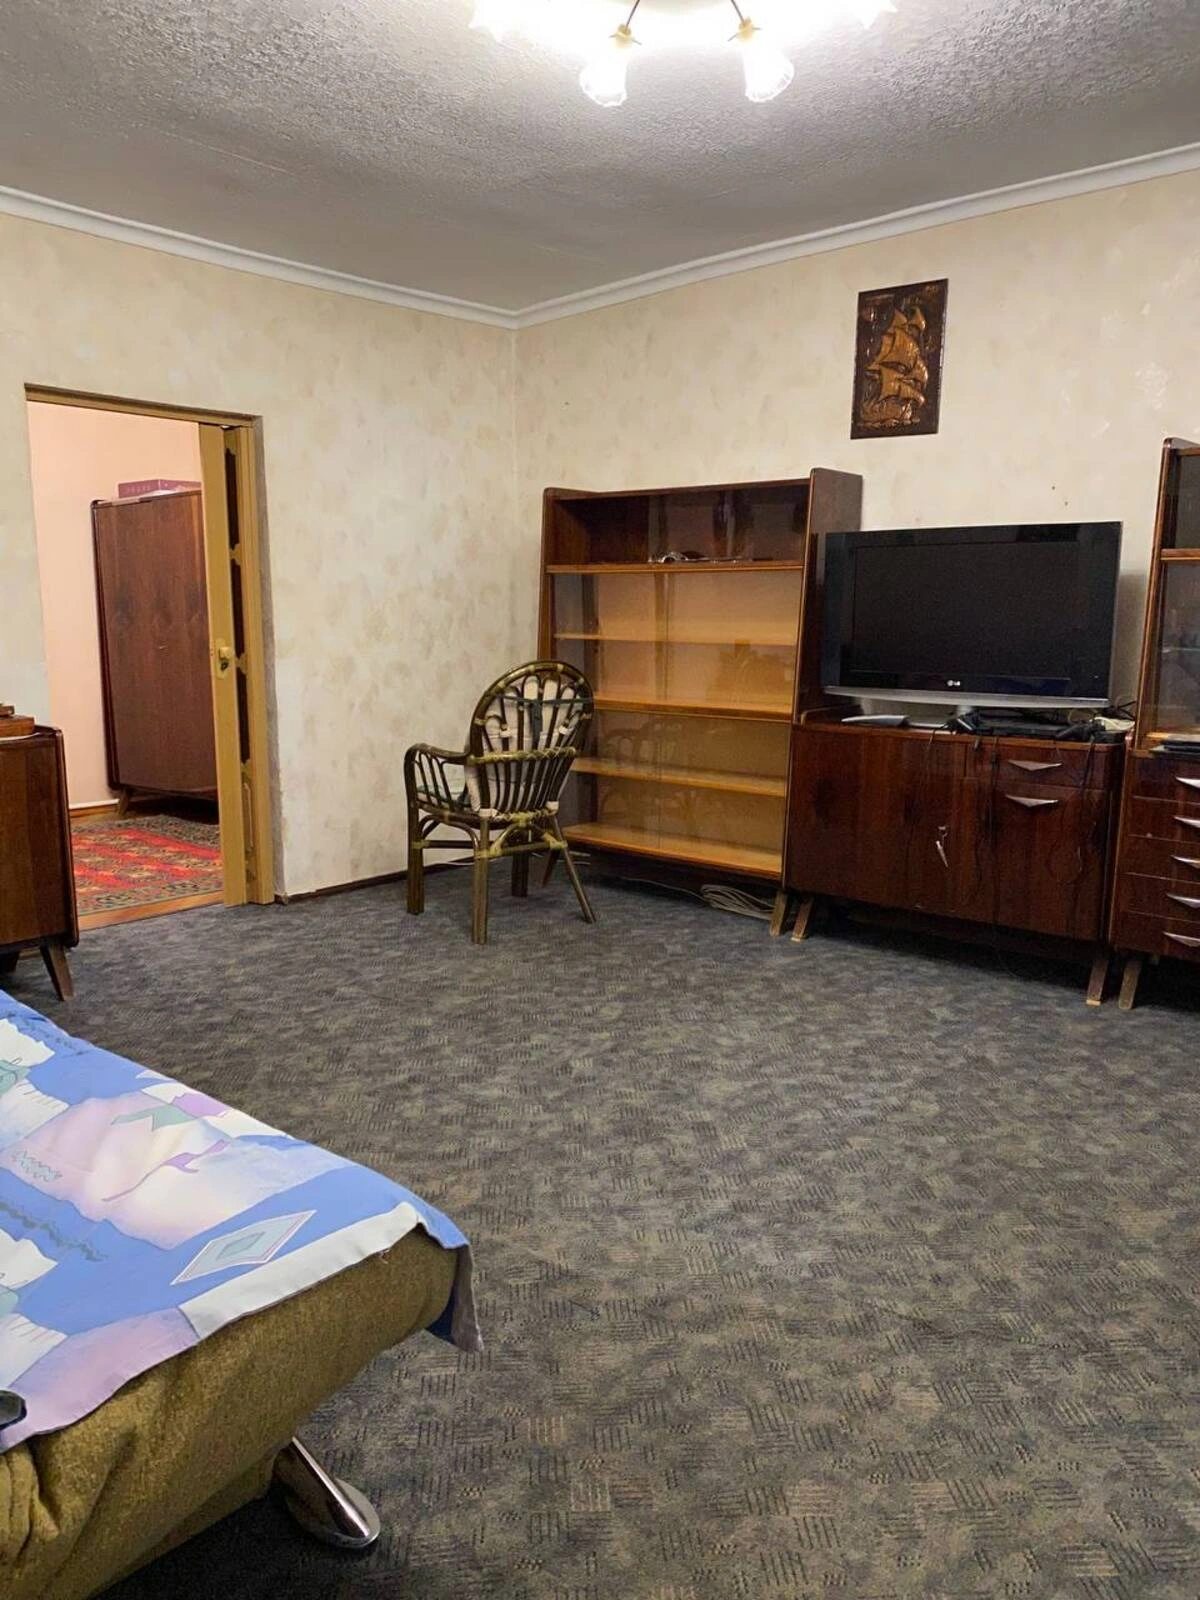 Трехкомнатная квартира со своим двориком на ул. Коблевская, в центре Одессы.